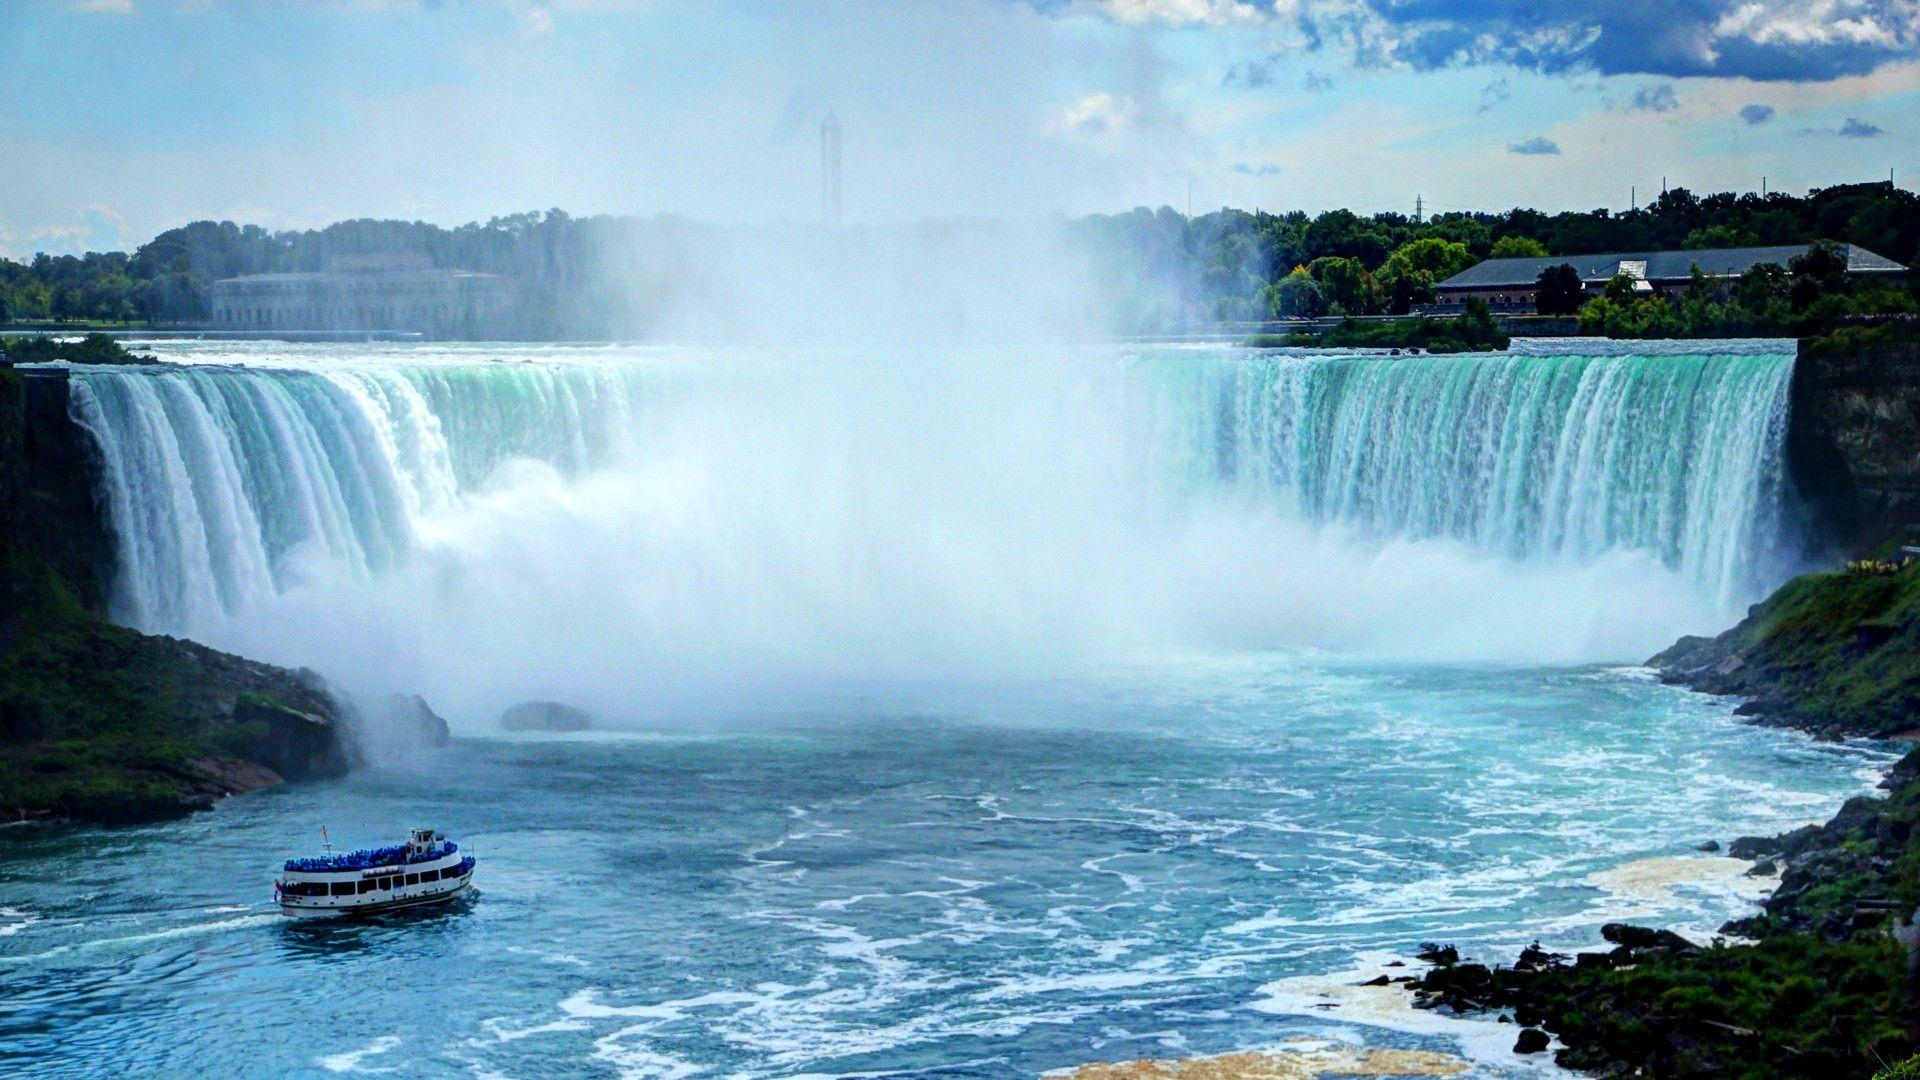 Niagara Falls Wallpaper, Niagara Falls Wallpaper. Niagara Falls